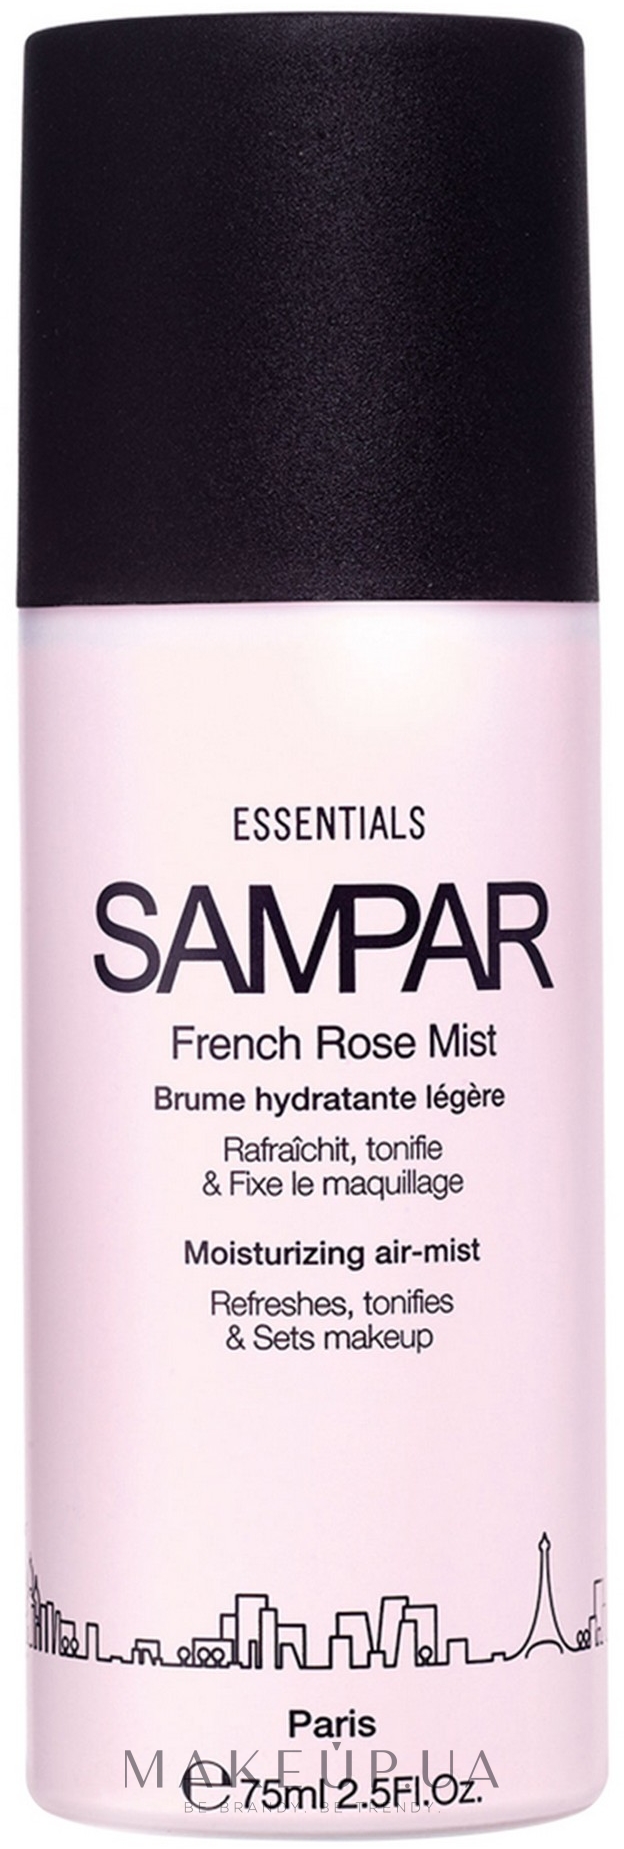 Освіжальний міст для обличчя й тіла - Sampar French Rose Mist — фото 75ml